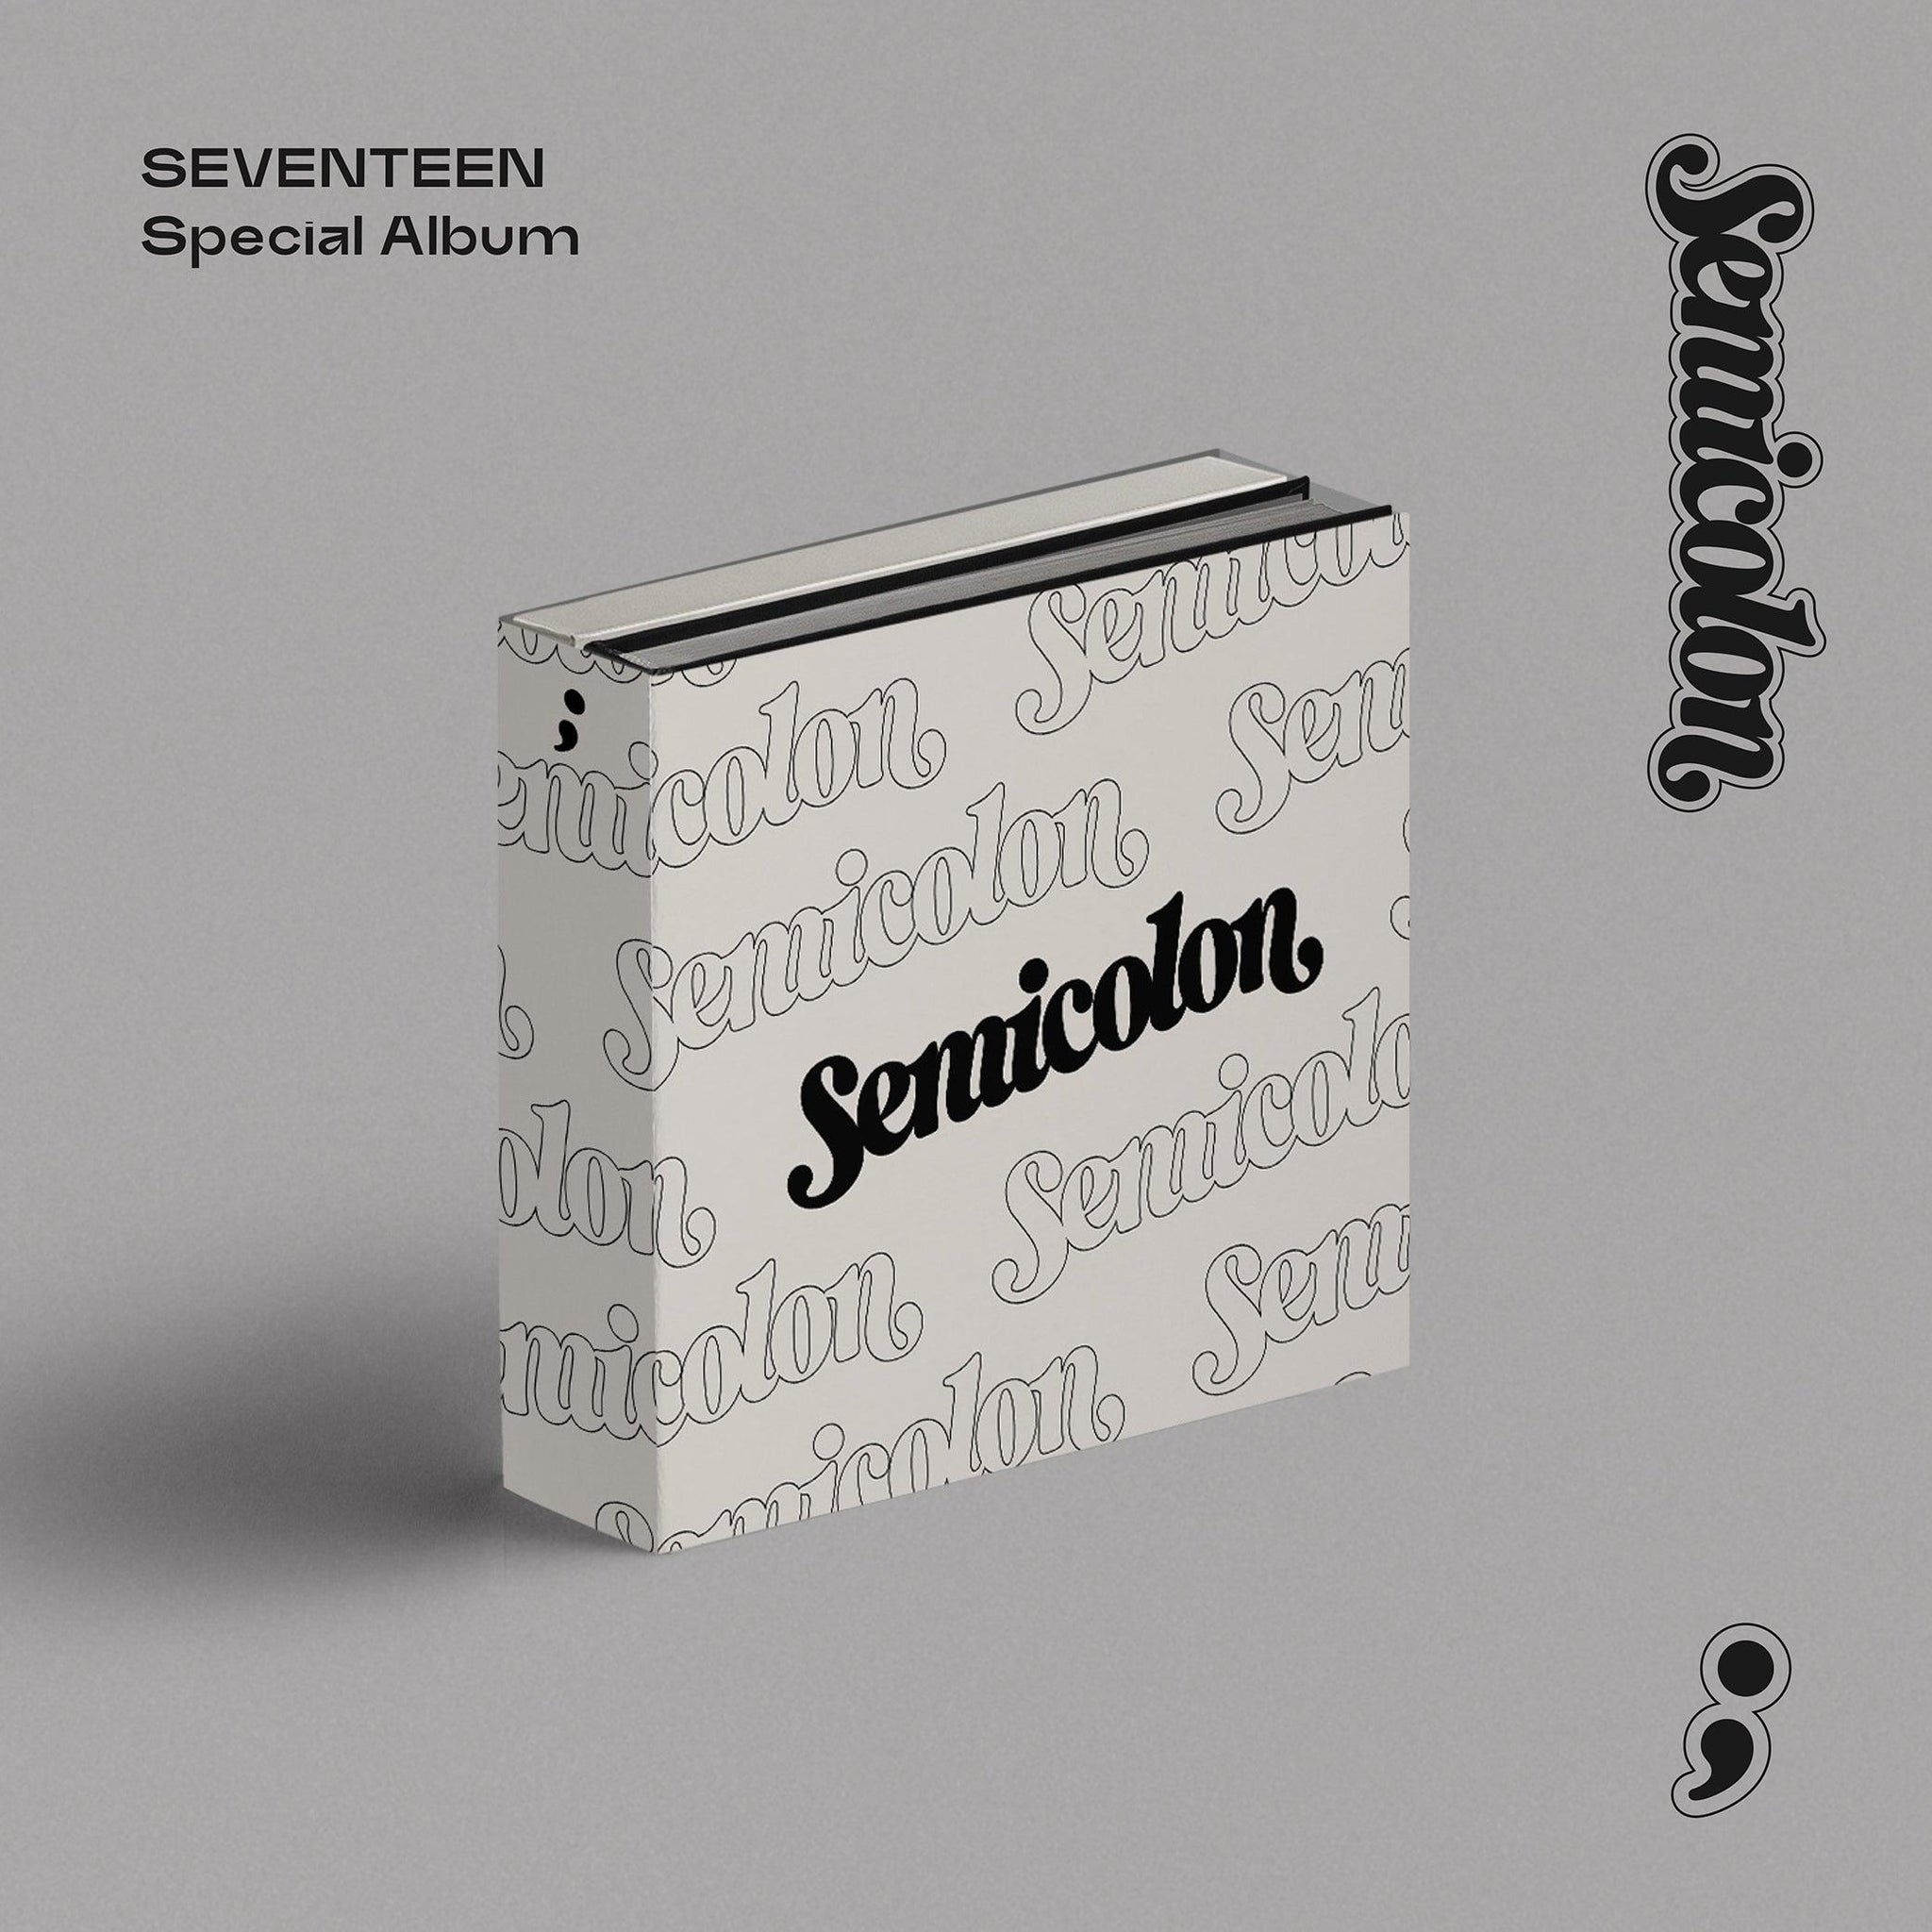 SEVENTEEN SPECIAL ALBUM 'SEMICOLON'